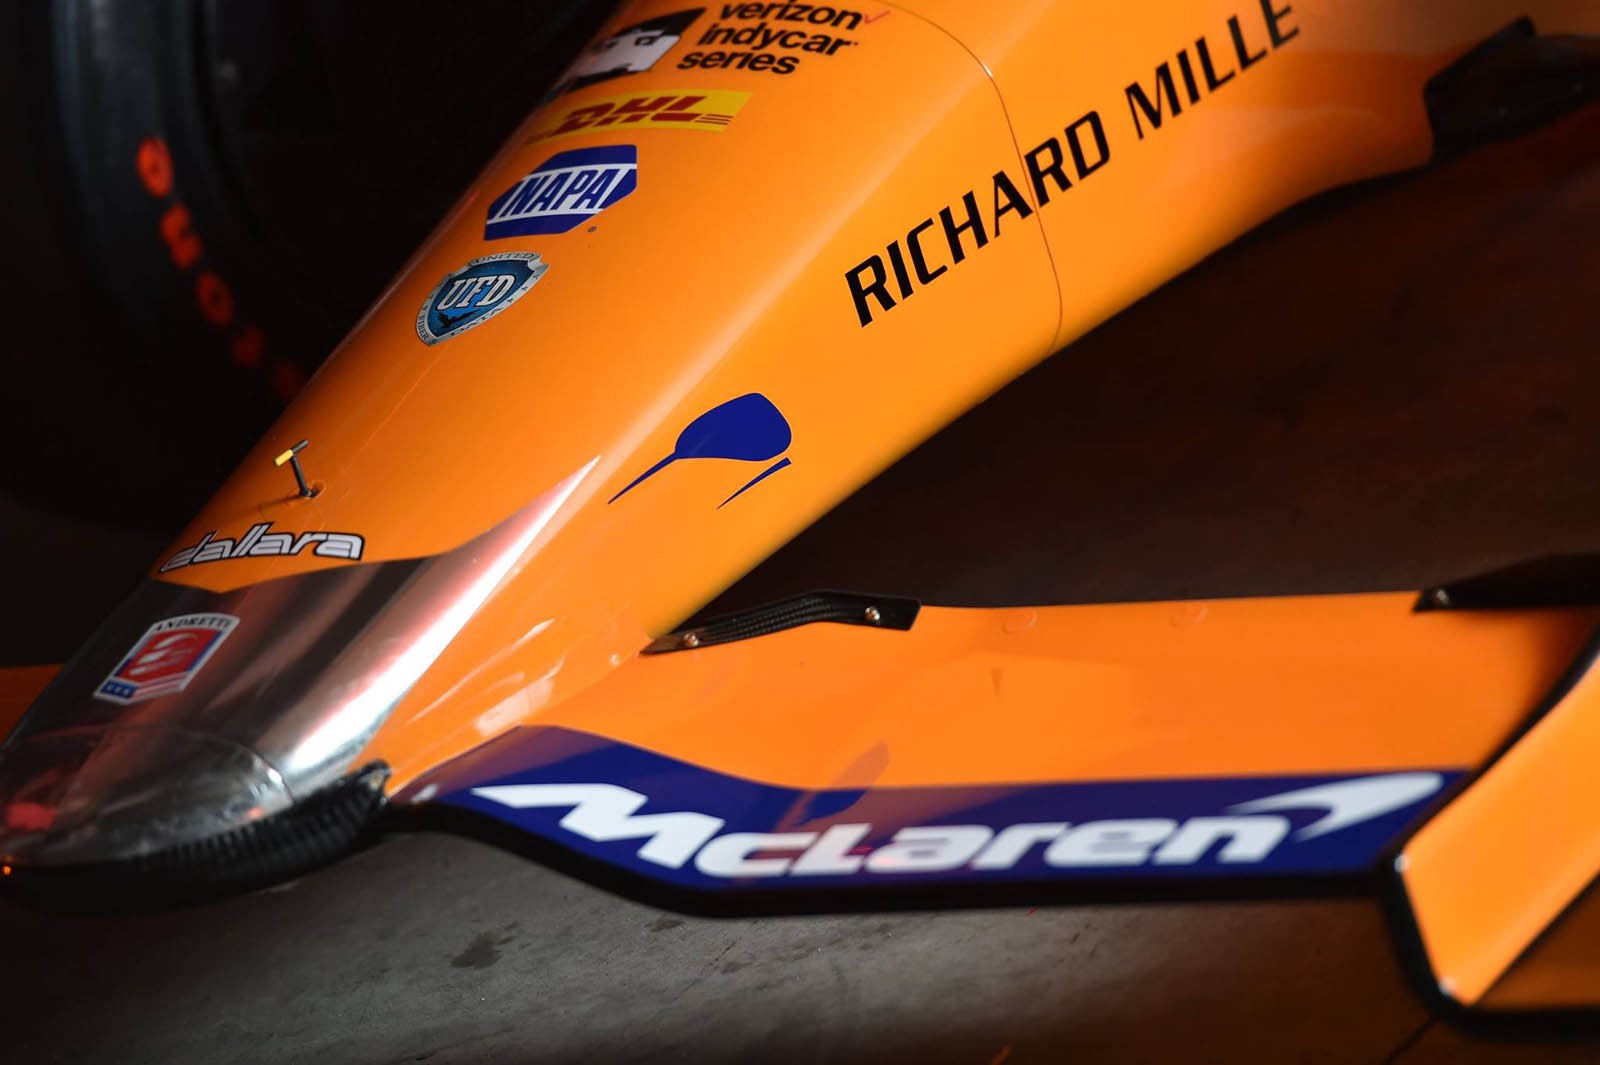 Richard Mille là một thương hiệu đồng hồ cao cấp cũng là người tài trợ cho đội đua của Alonso